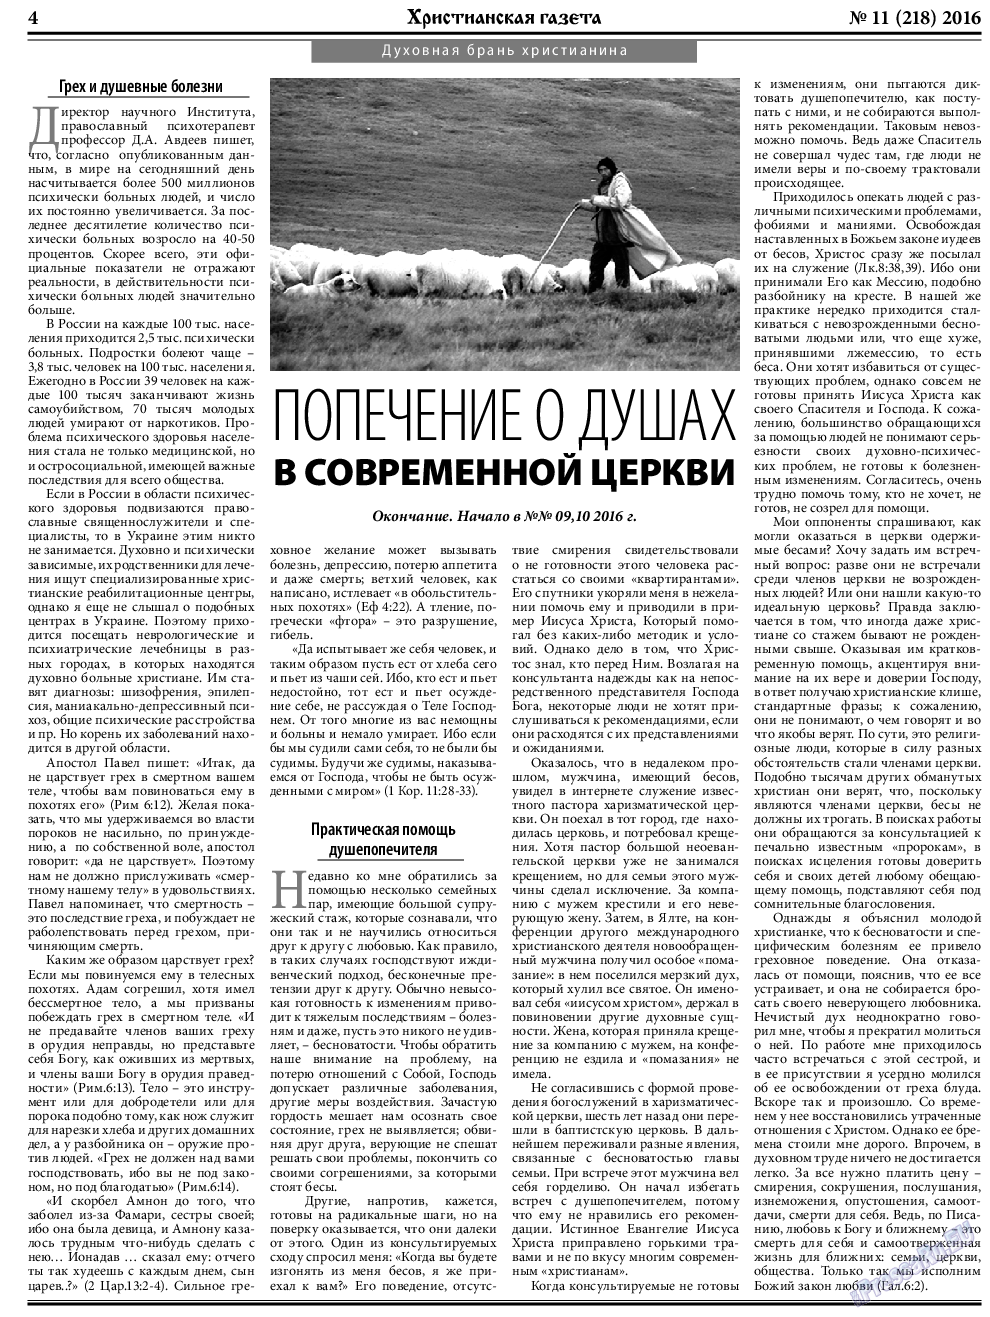 Христианская газета, газета. 2016 №11 стр.4